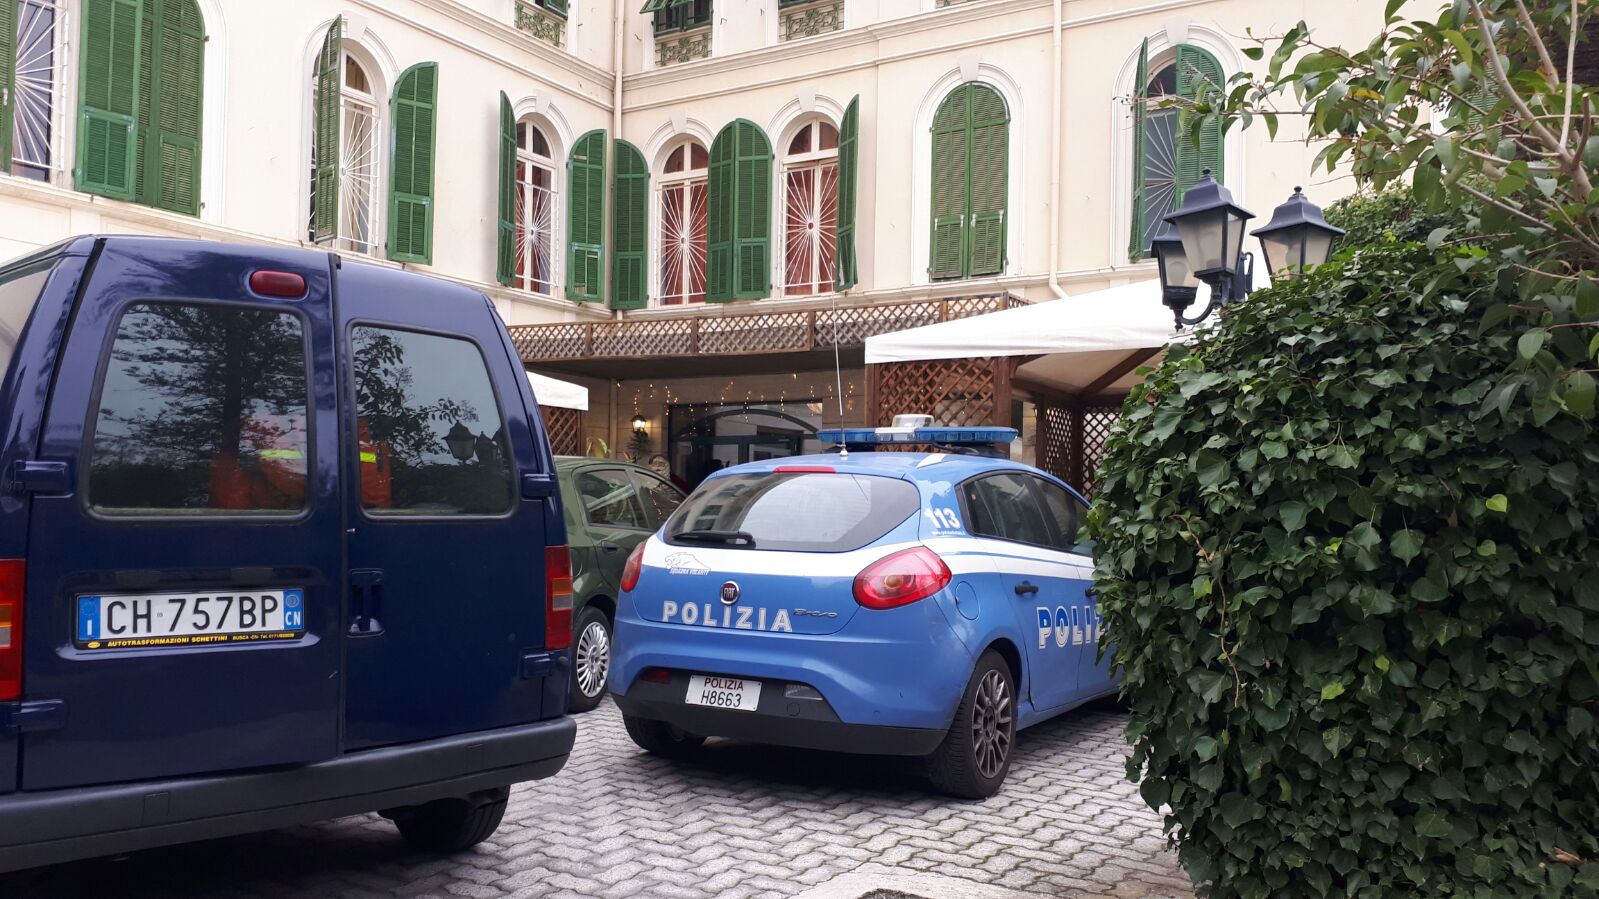 Casa di riposo Villa Speranza Polizia Sanremo